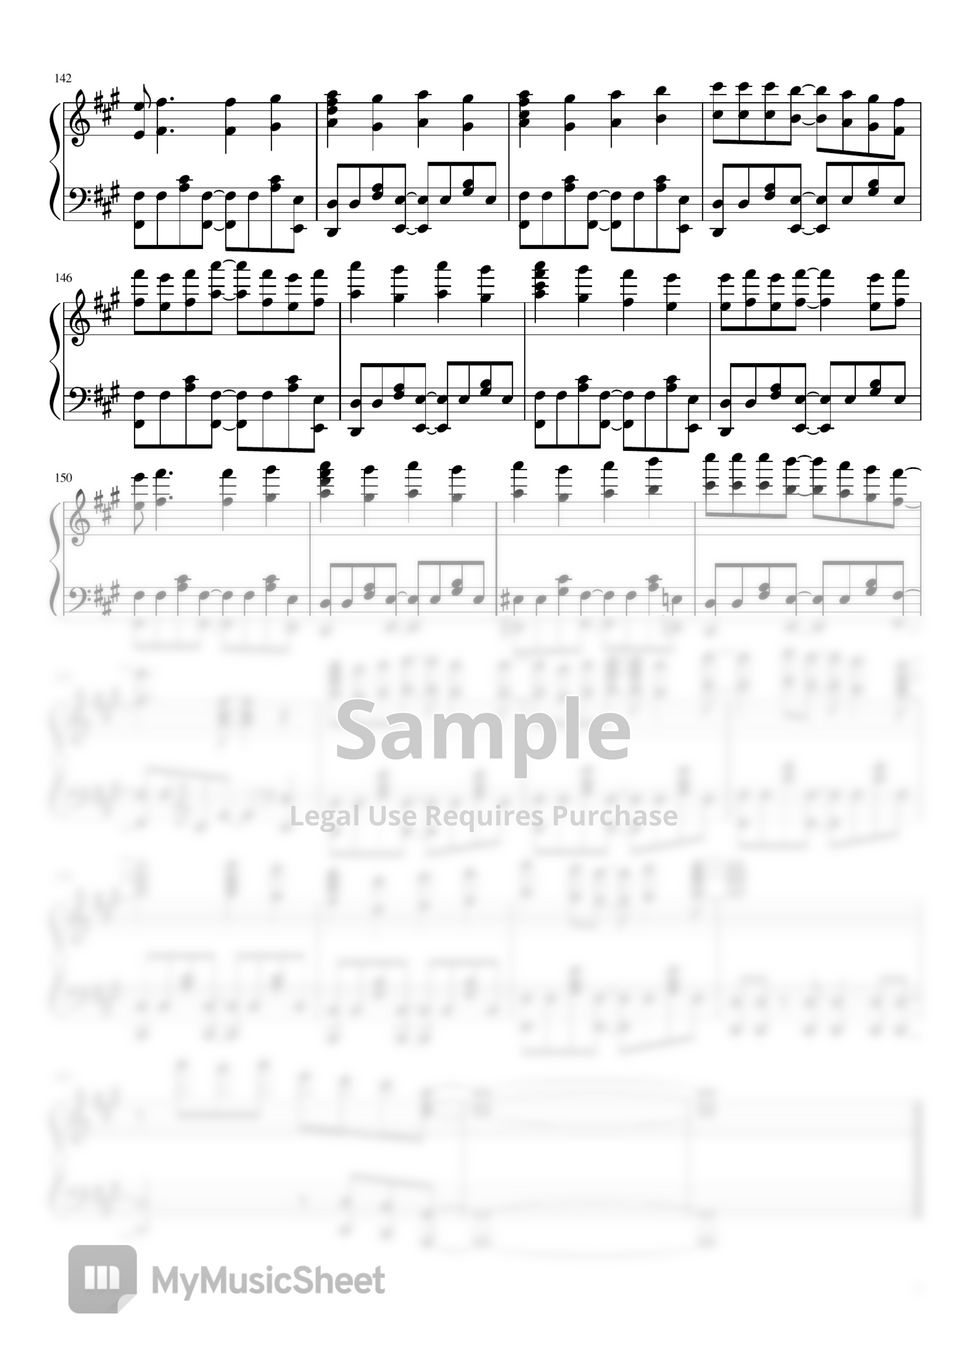 Hikaru Nara: D E C#M F#M F#M, PDF, Song Structure